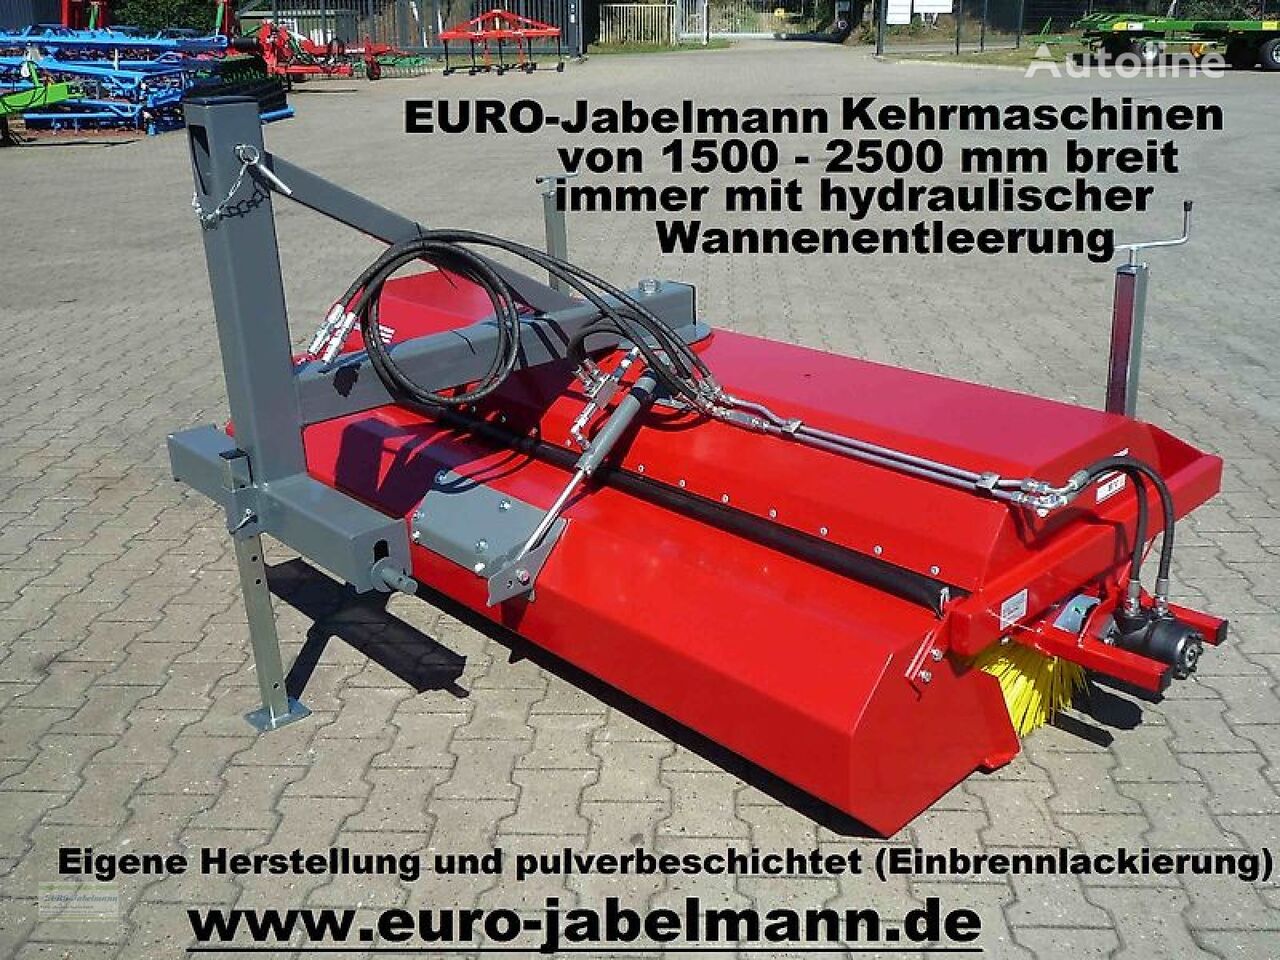 нови четка за метење Euro-Jabelmann Kehrmaschinen, NEU, Breiten 1500 - 2500 mm, eigene Herstellung